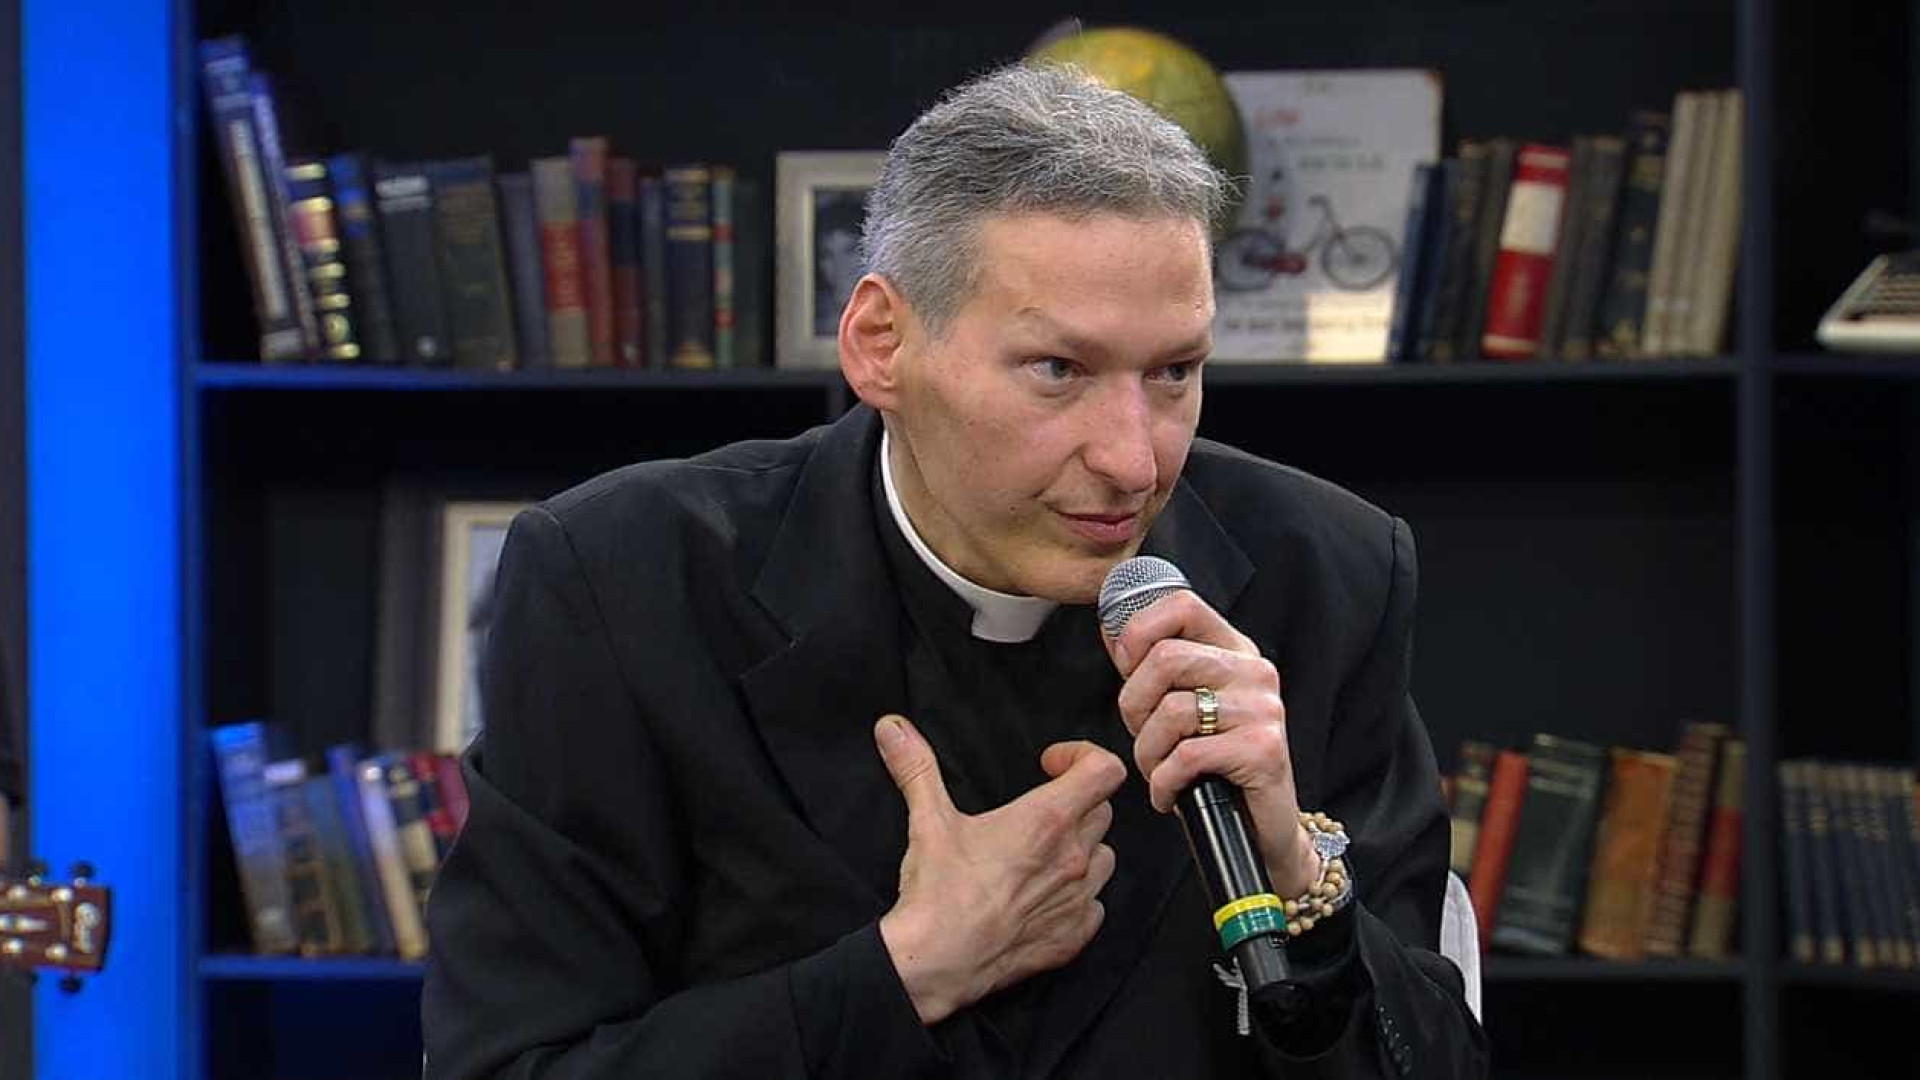 Padre Marcelo Rossi relata dramas pessoais para se aproximar de fiéis em novo livro